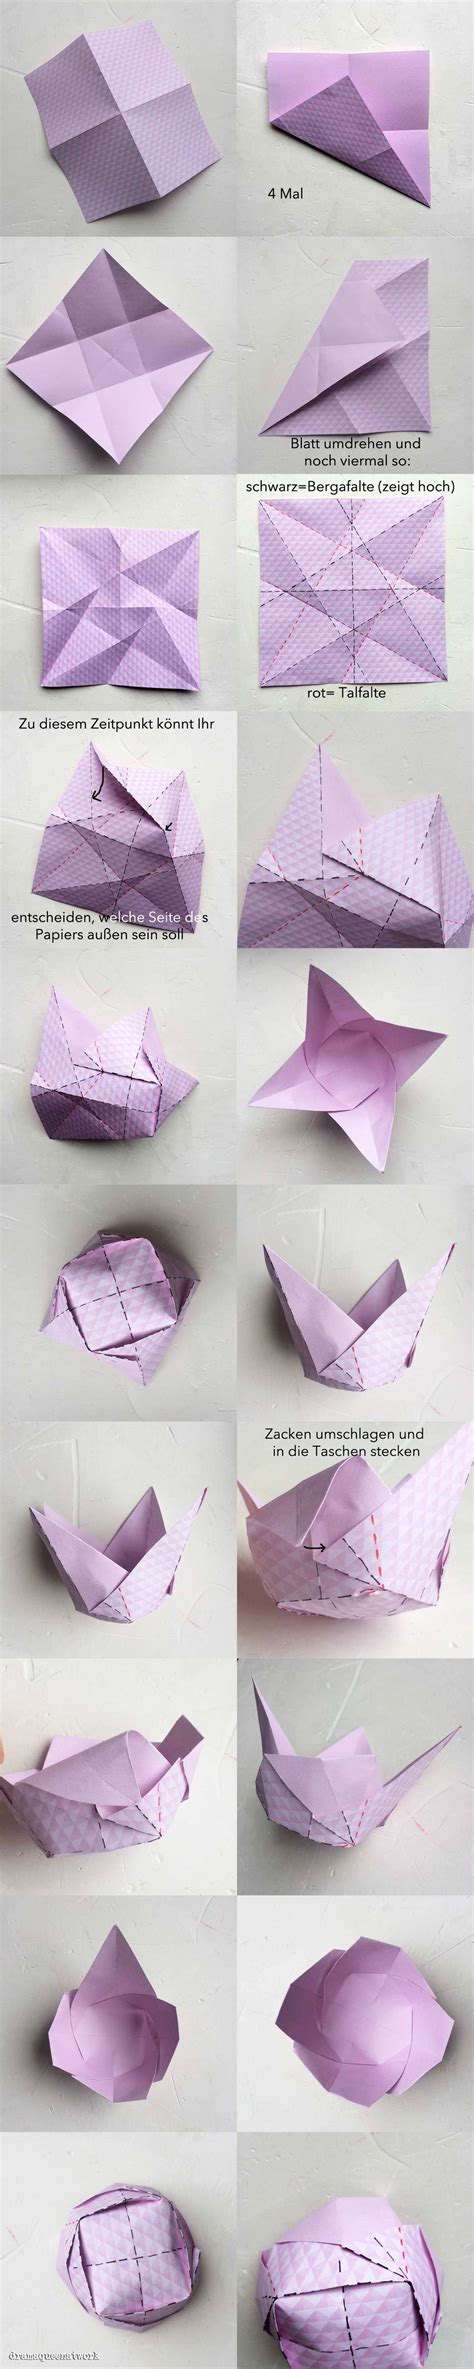 Diy schachteln schachteln falten origami schachteln schachtel falten anleitung schachtel basteln basteln mit papier geschenkbox basteln basteln anleitung selber machen. Papierschälchen Galore | Origami boxen, Origami, Basteln mit papier